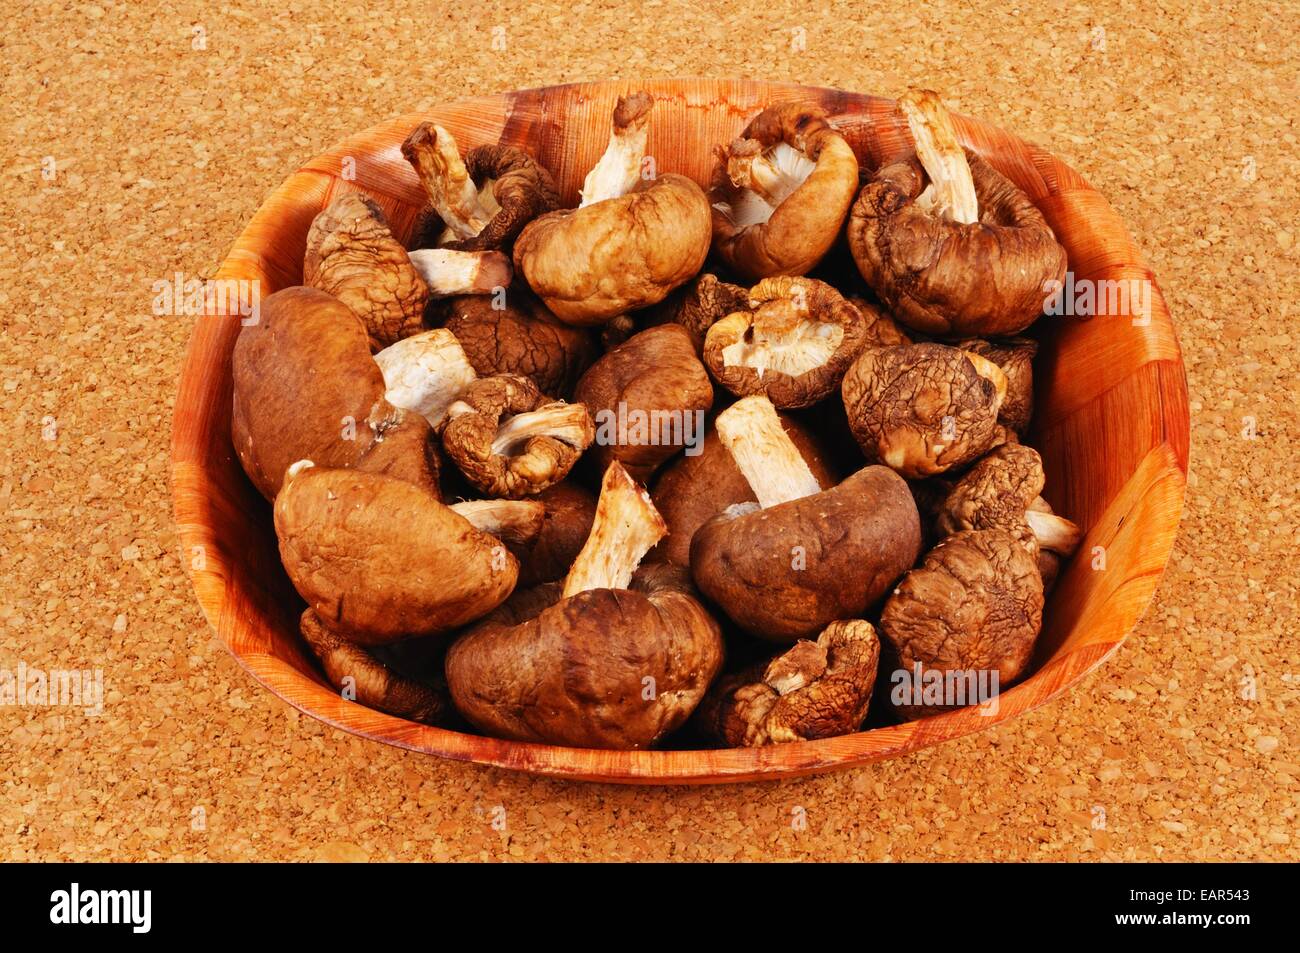 Raw Shiitake mushrooms in a dish. Stock Photo